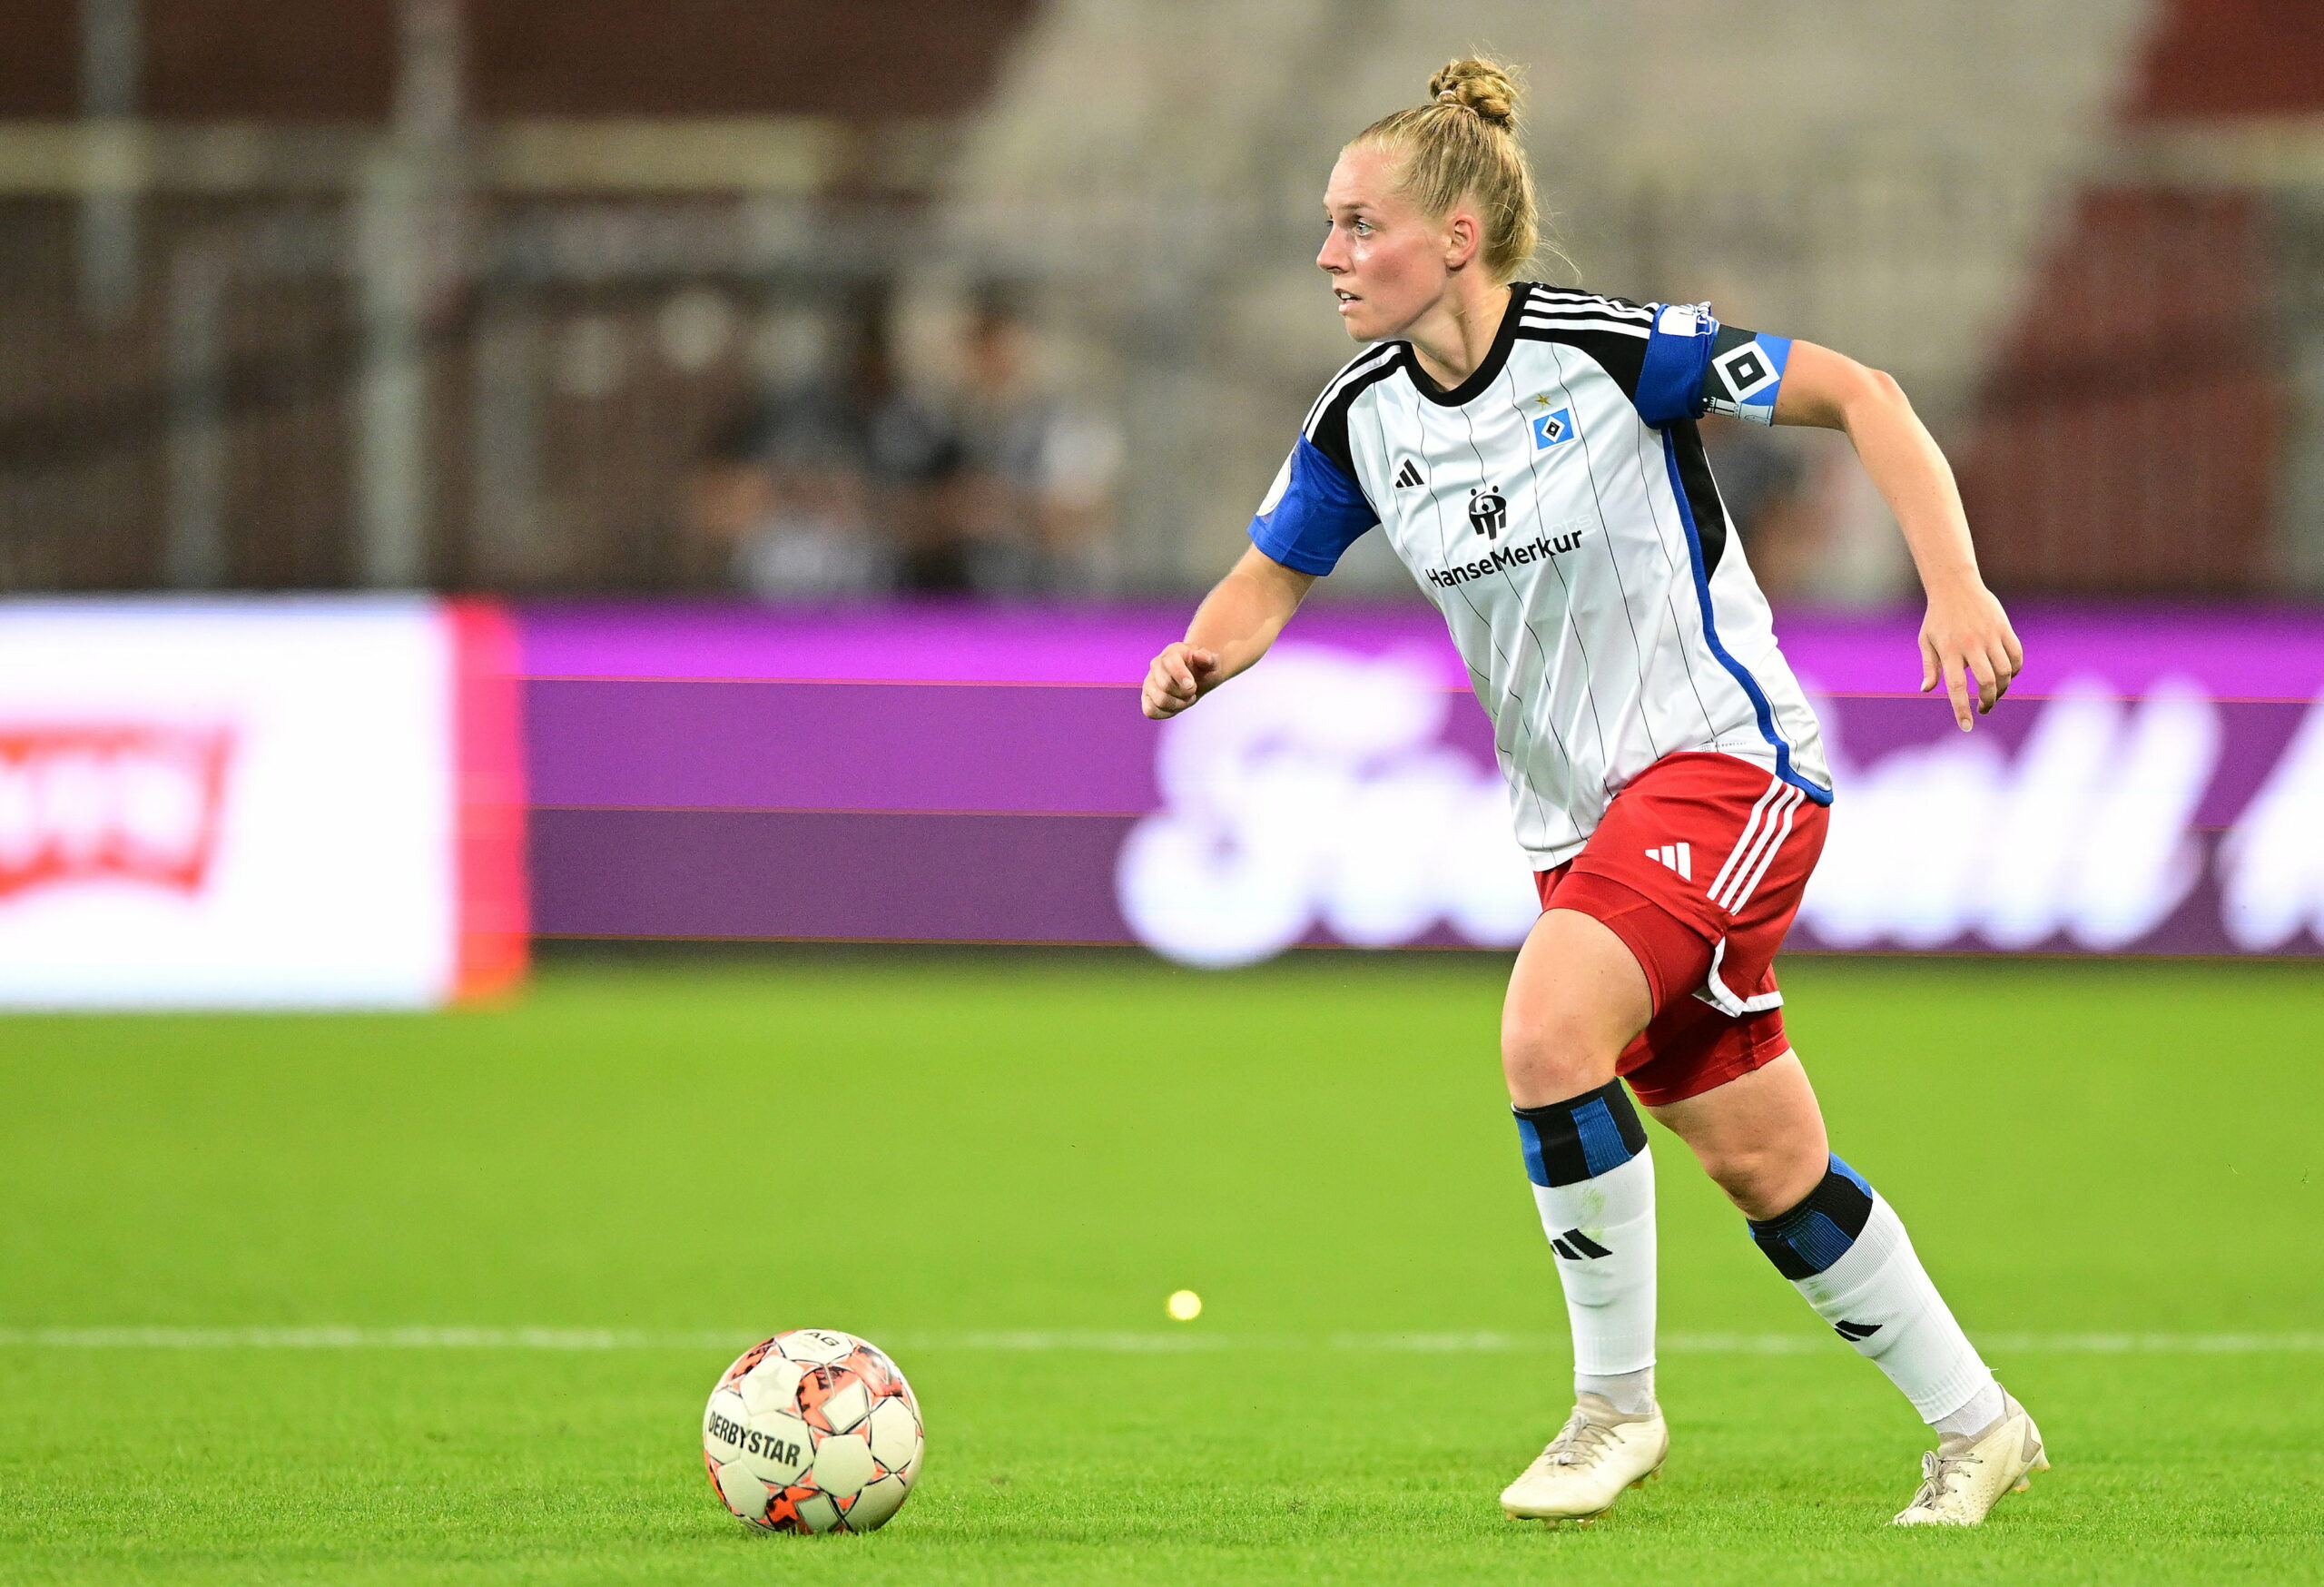 HSV-Spielerin Sarah-Vanessa Stoeckmann gegen St. Pauli